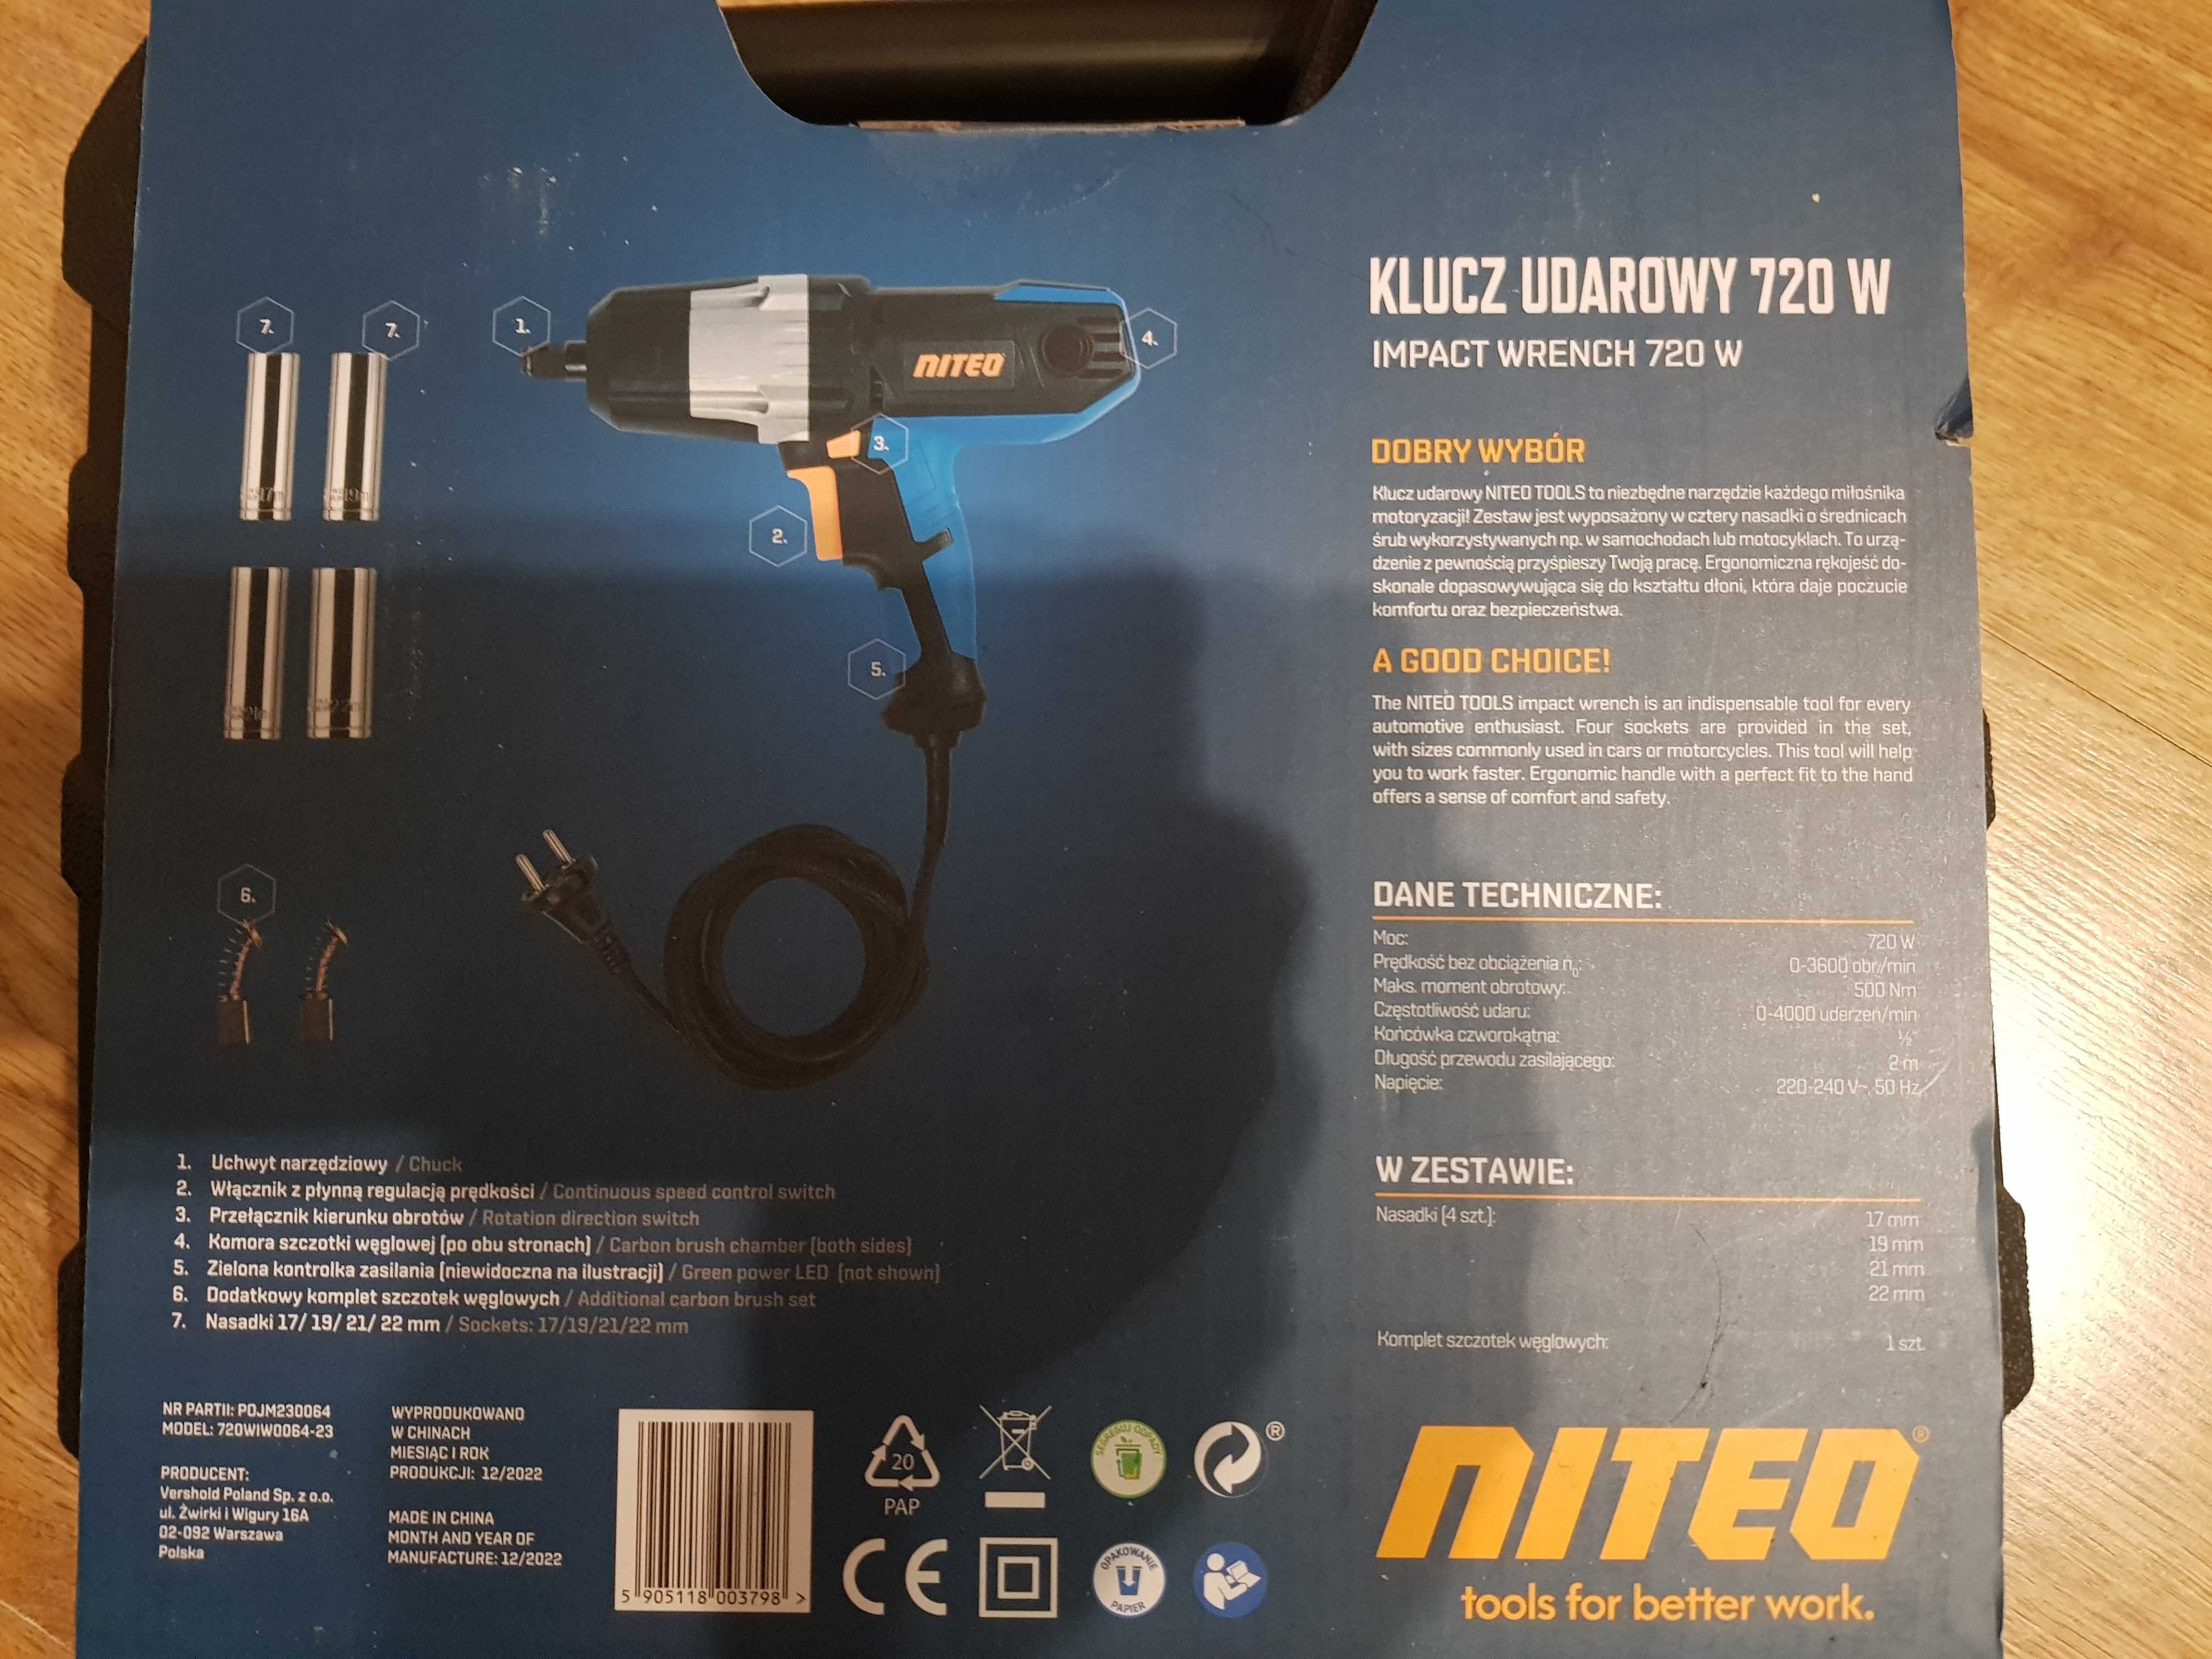 Klucz udarowy elektryczny Niteo tools